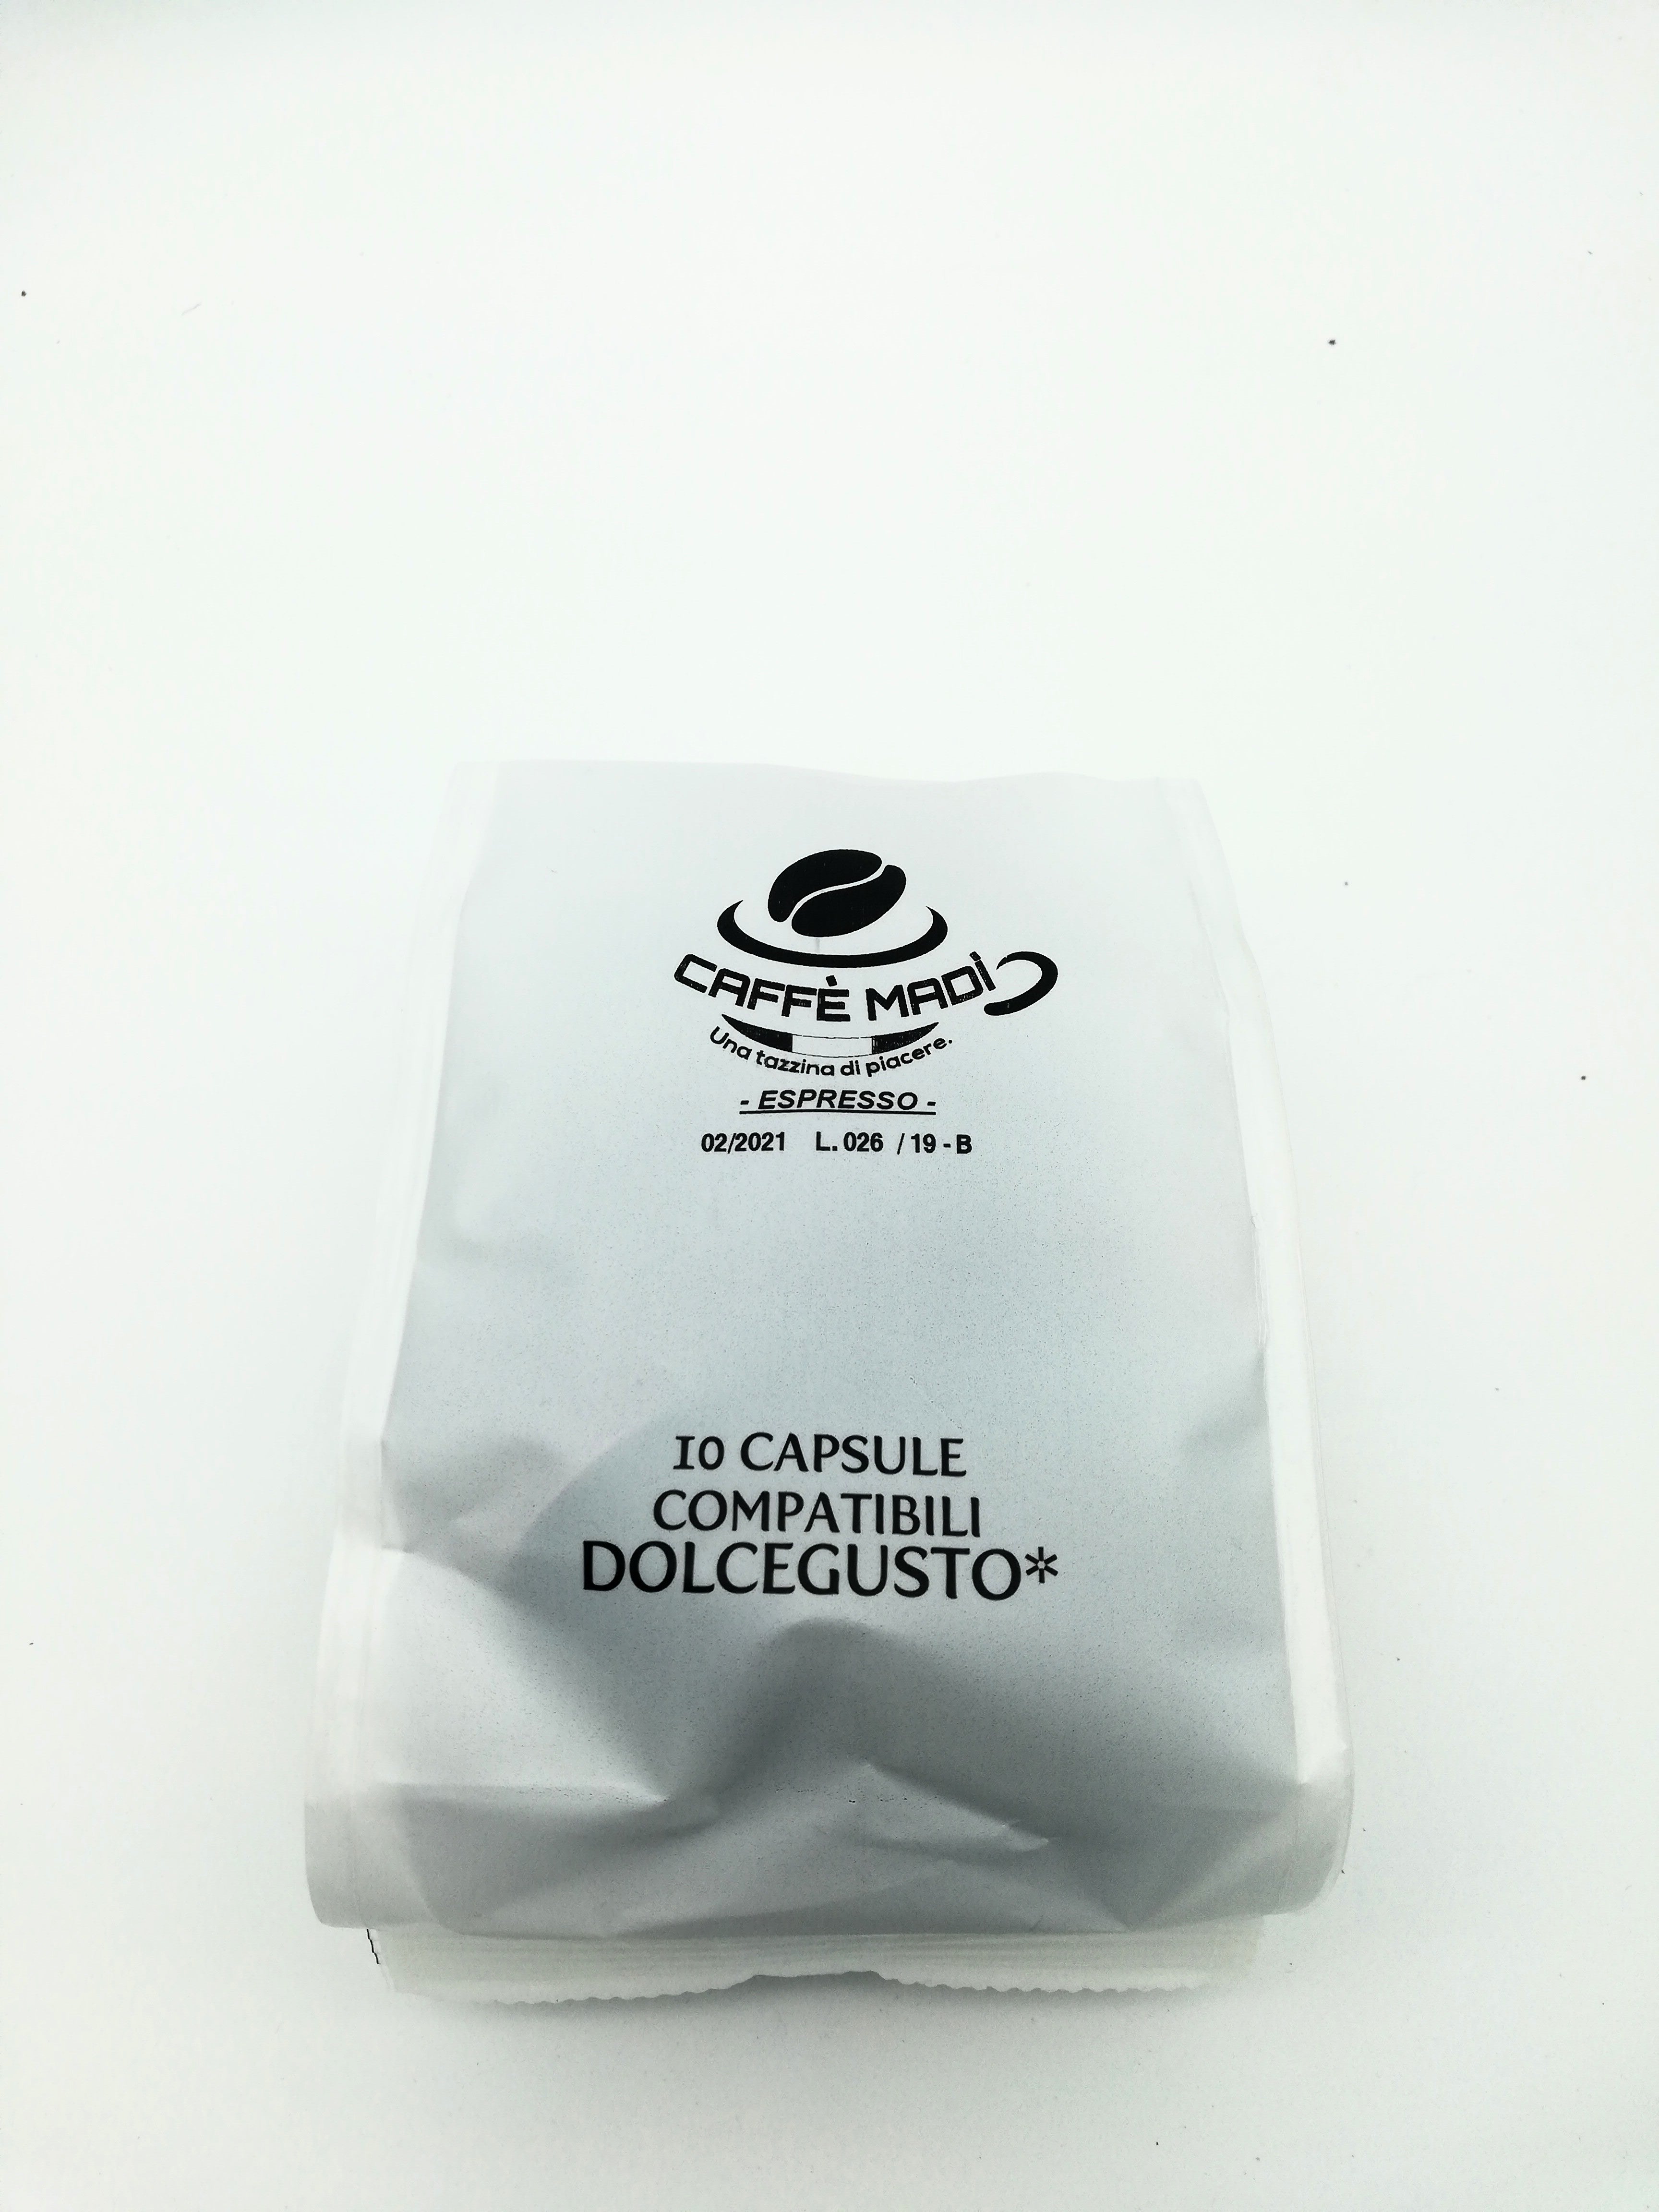 10 Capsule Compatibili Dolcegusto - Caffè Madì Espresso